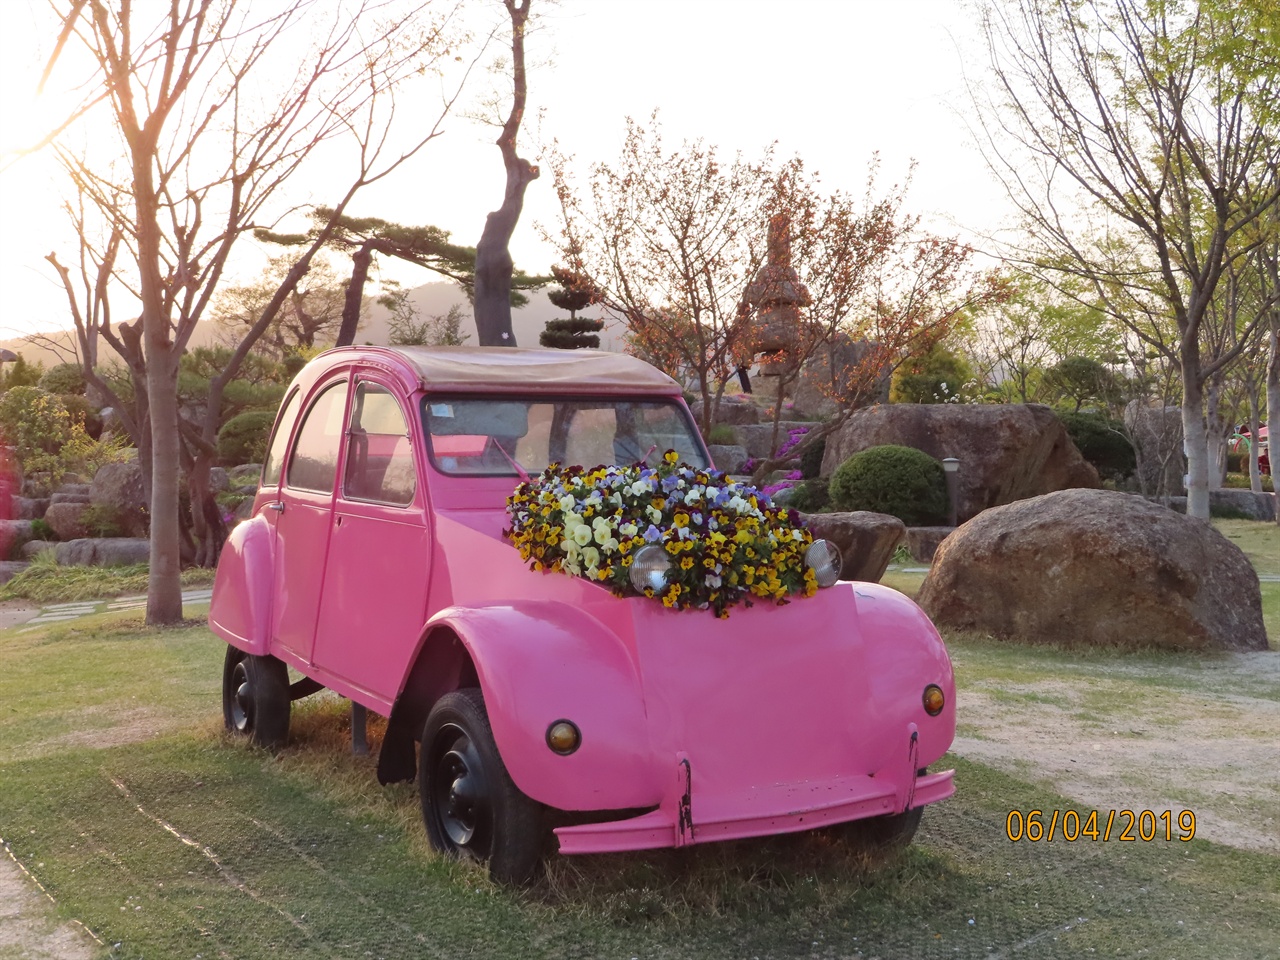 국가정원에는 각기 다른 색을 지닌 딱정벌레 차가 소품으로 전시되어 있다. 